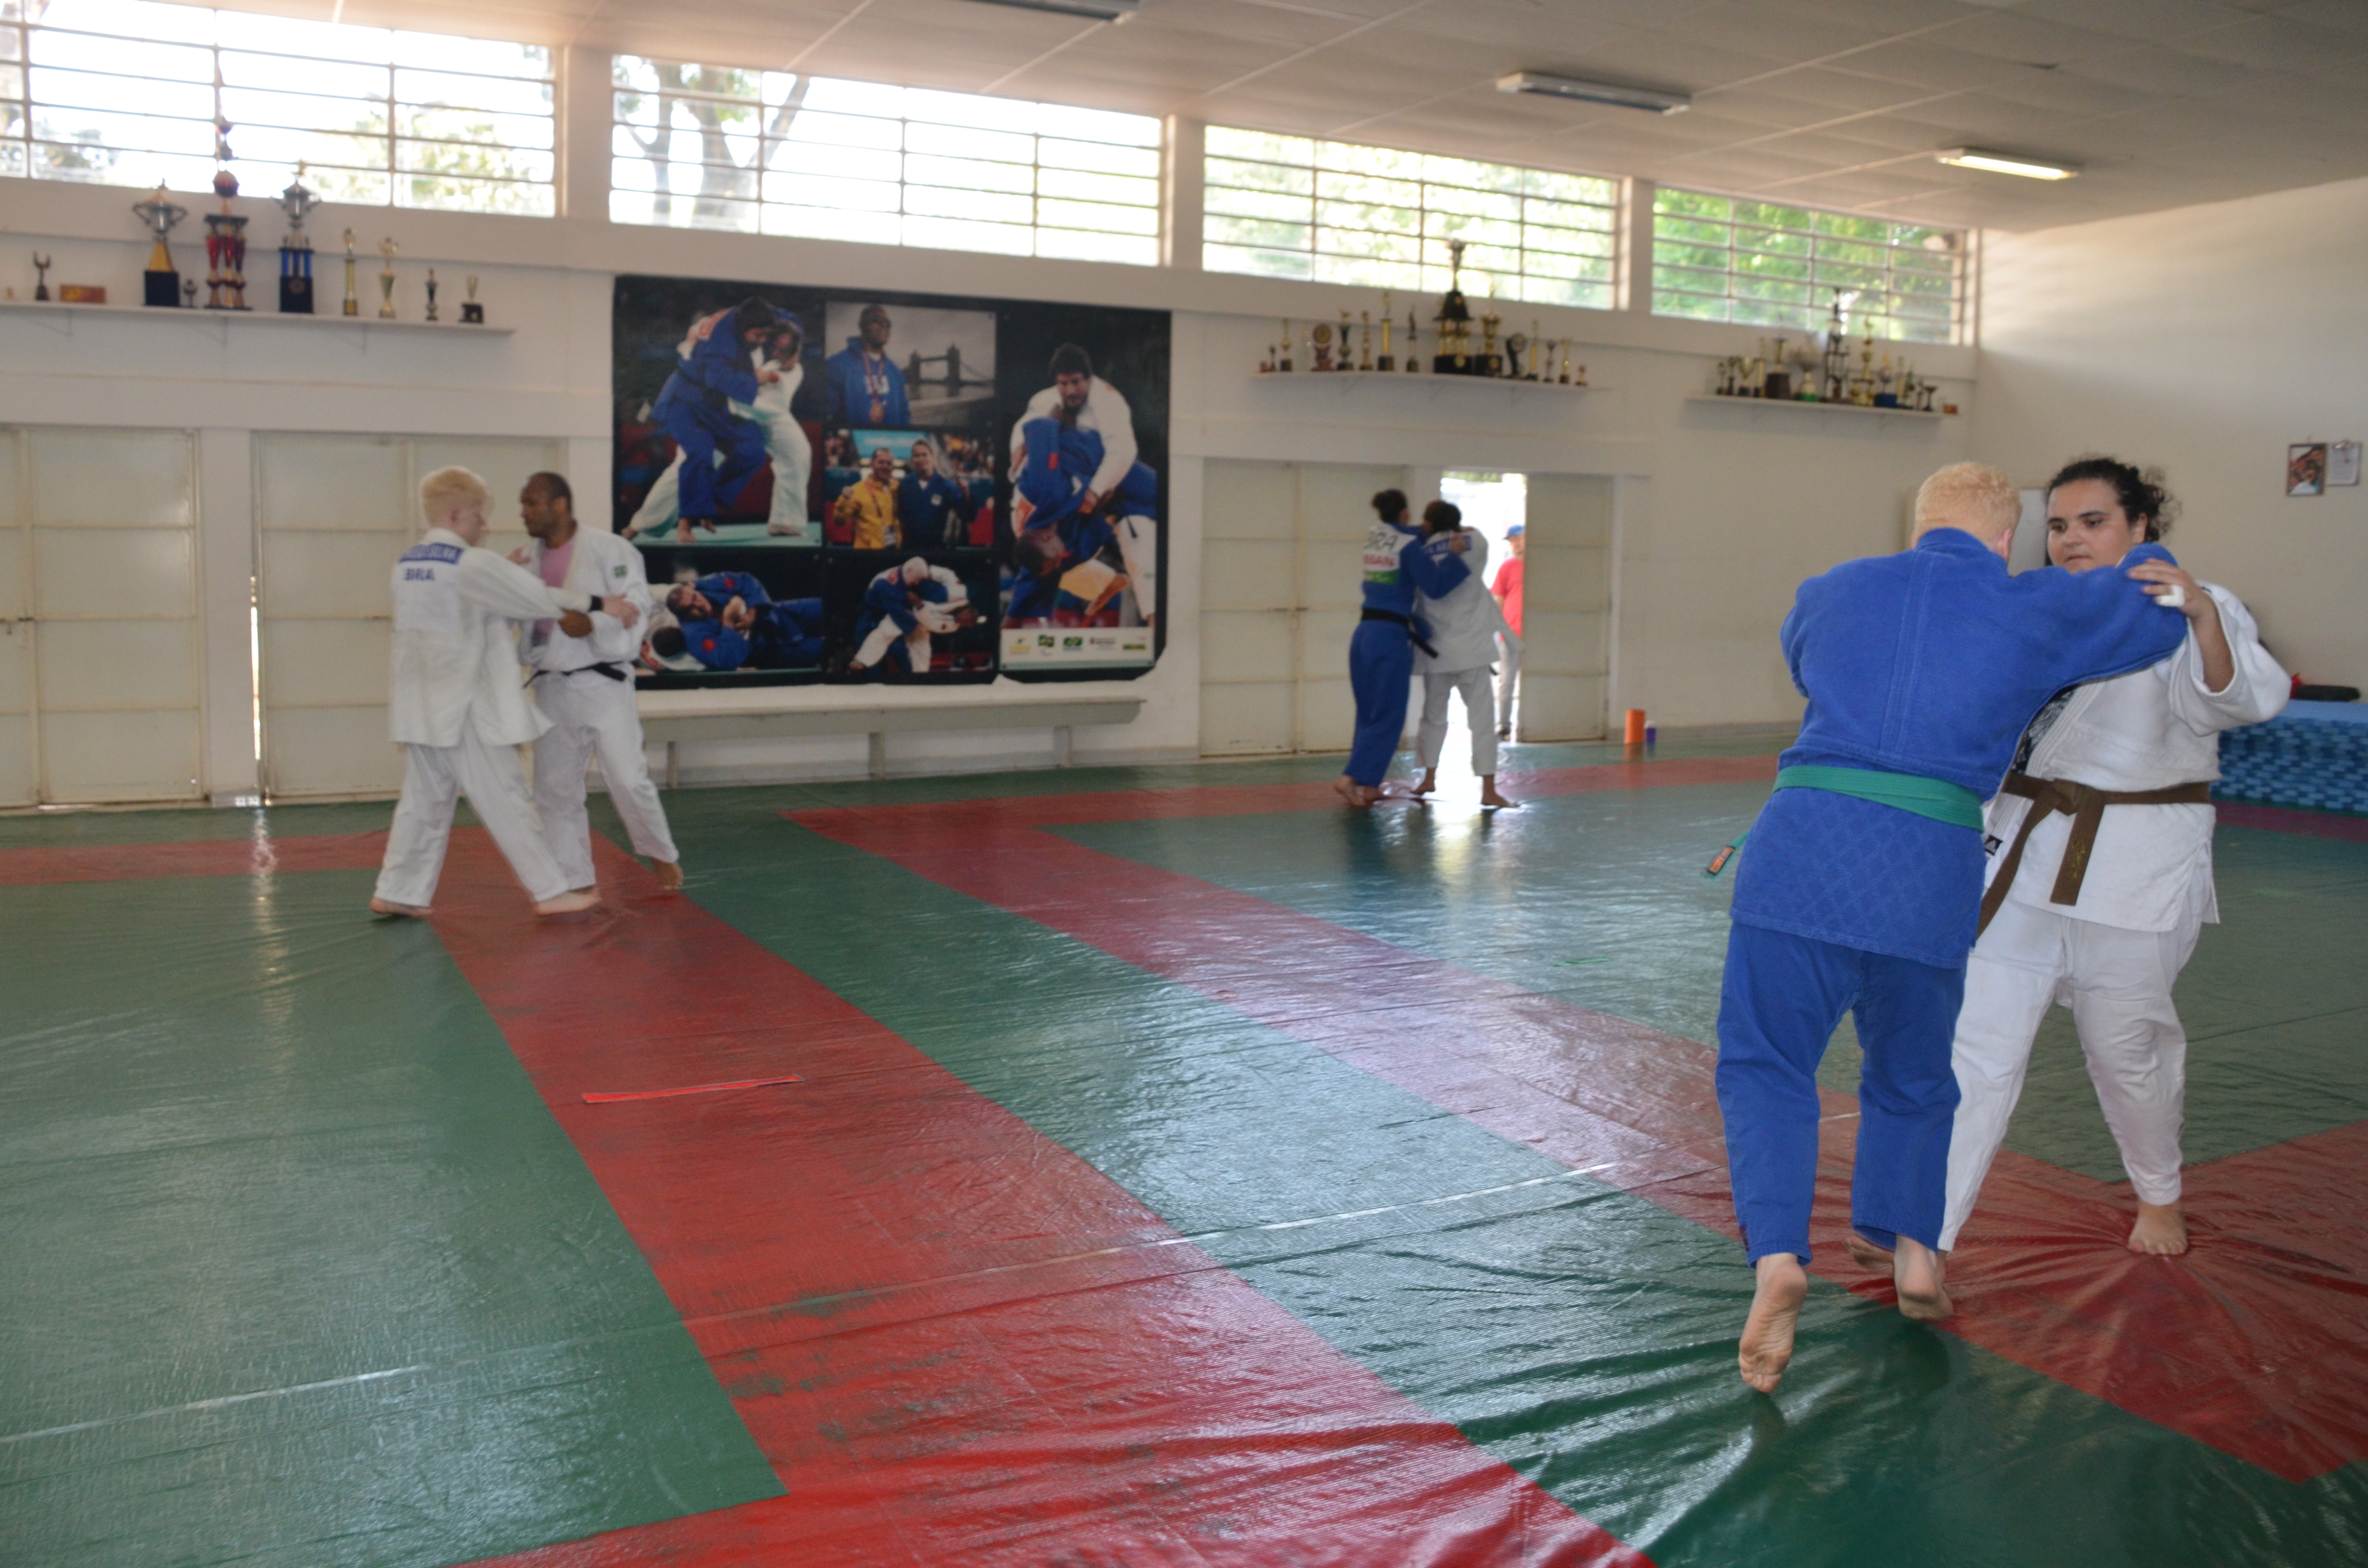 Na foto aparecem atletas de Judo em treinamento